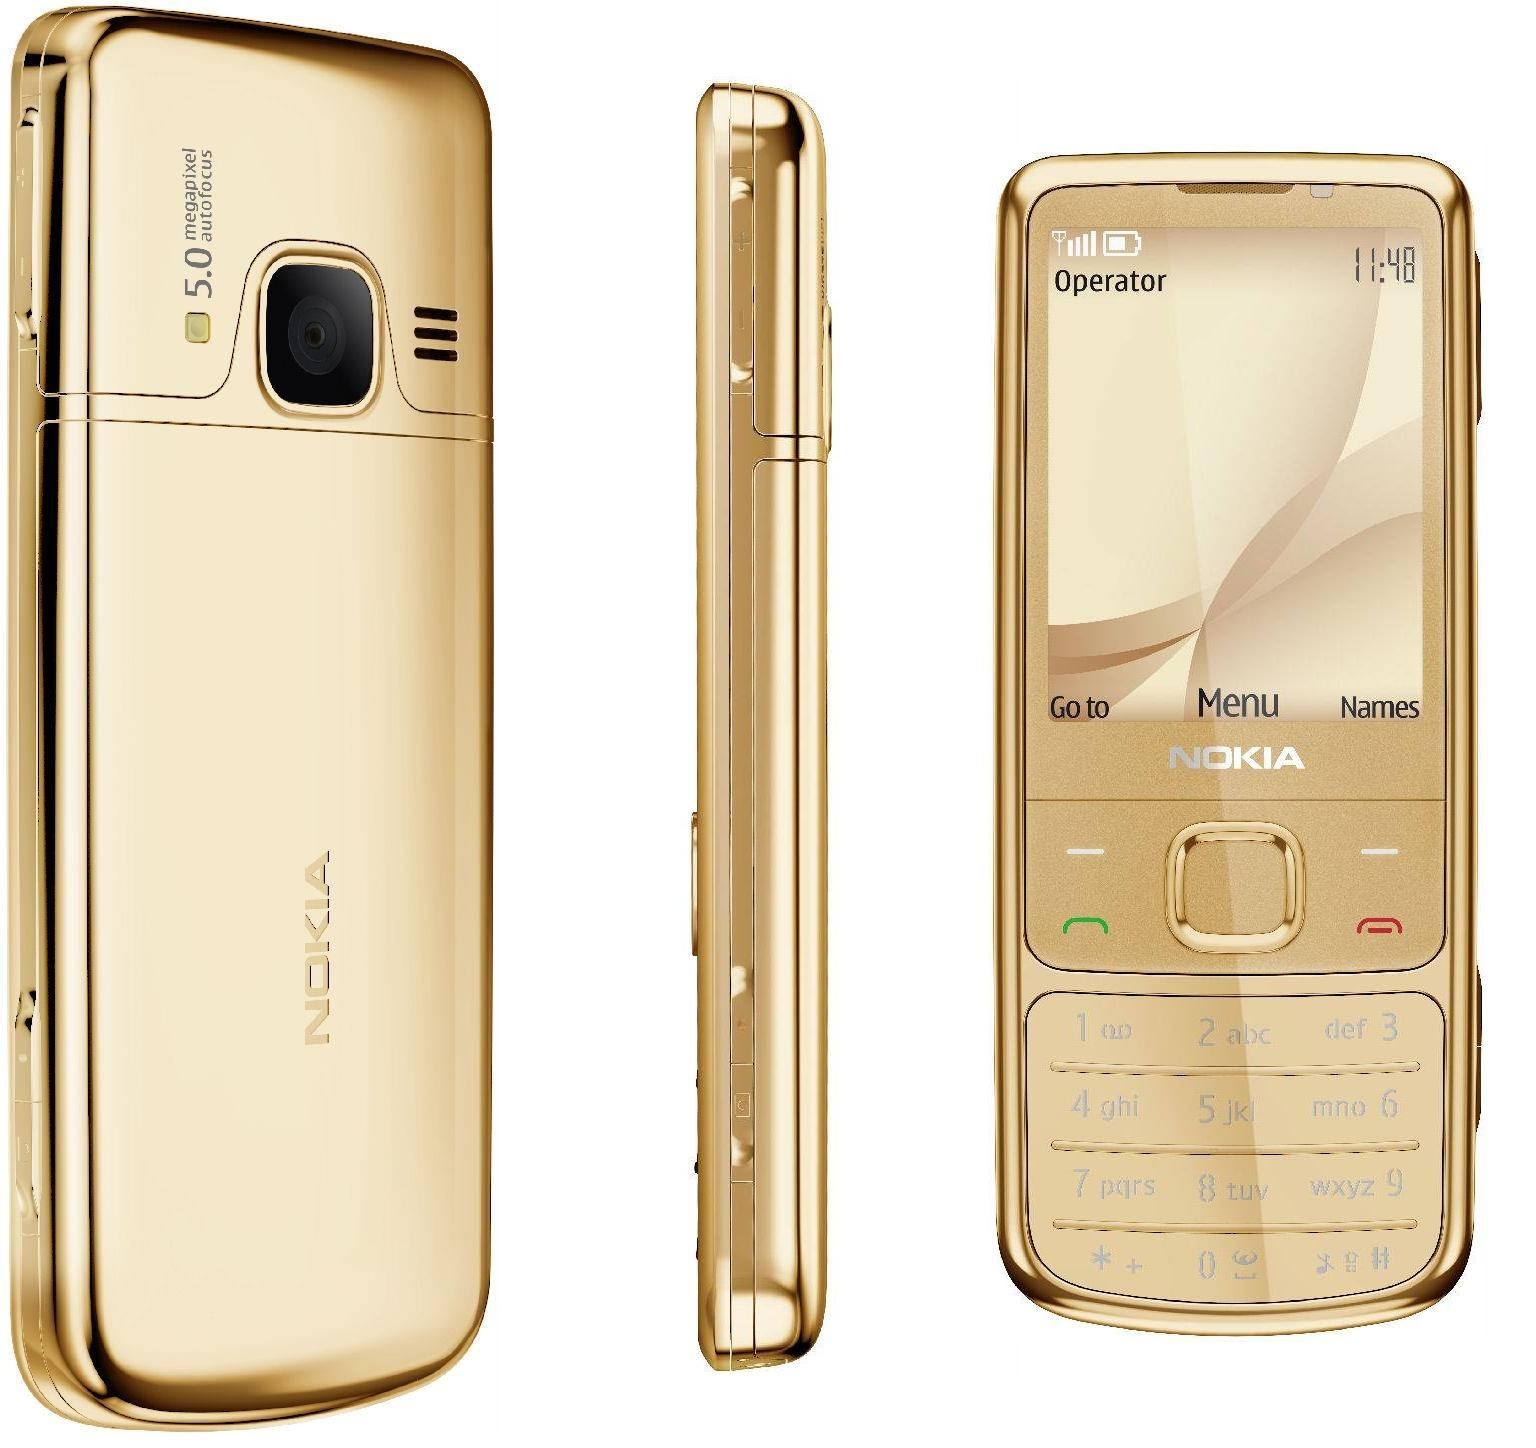 Nokia 6300 classic